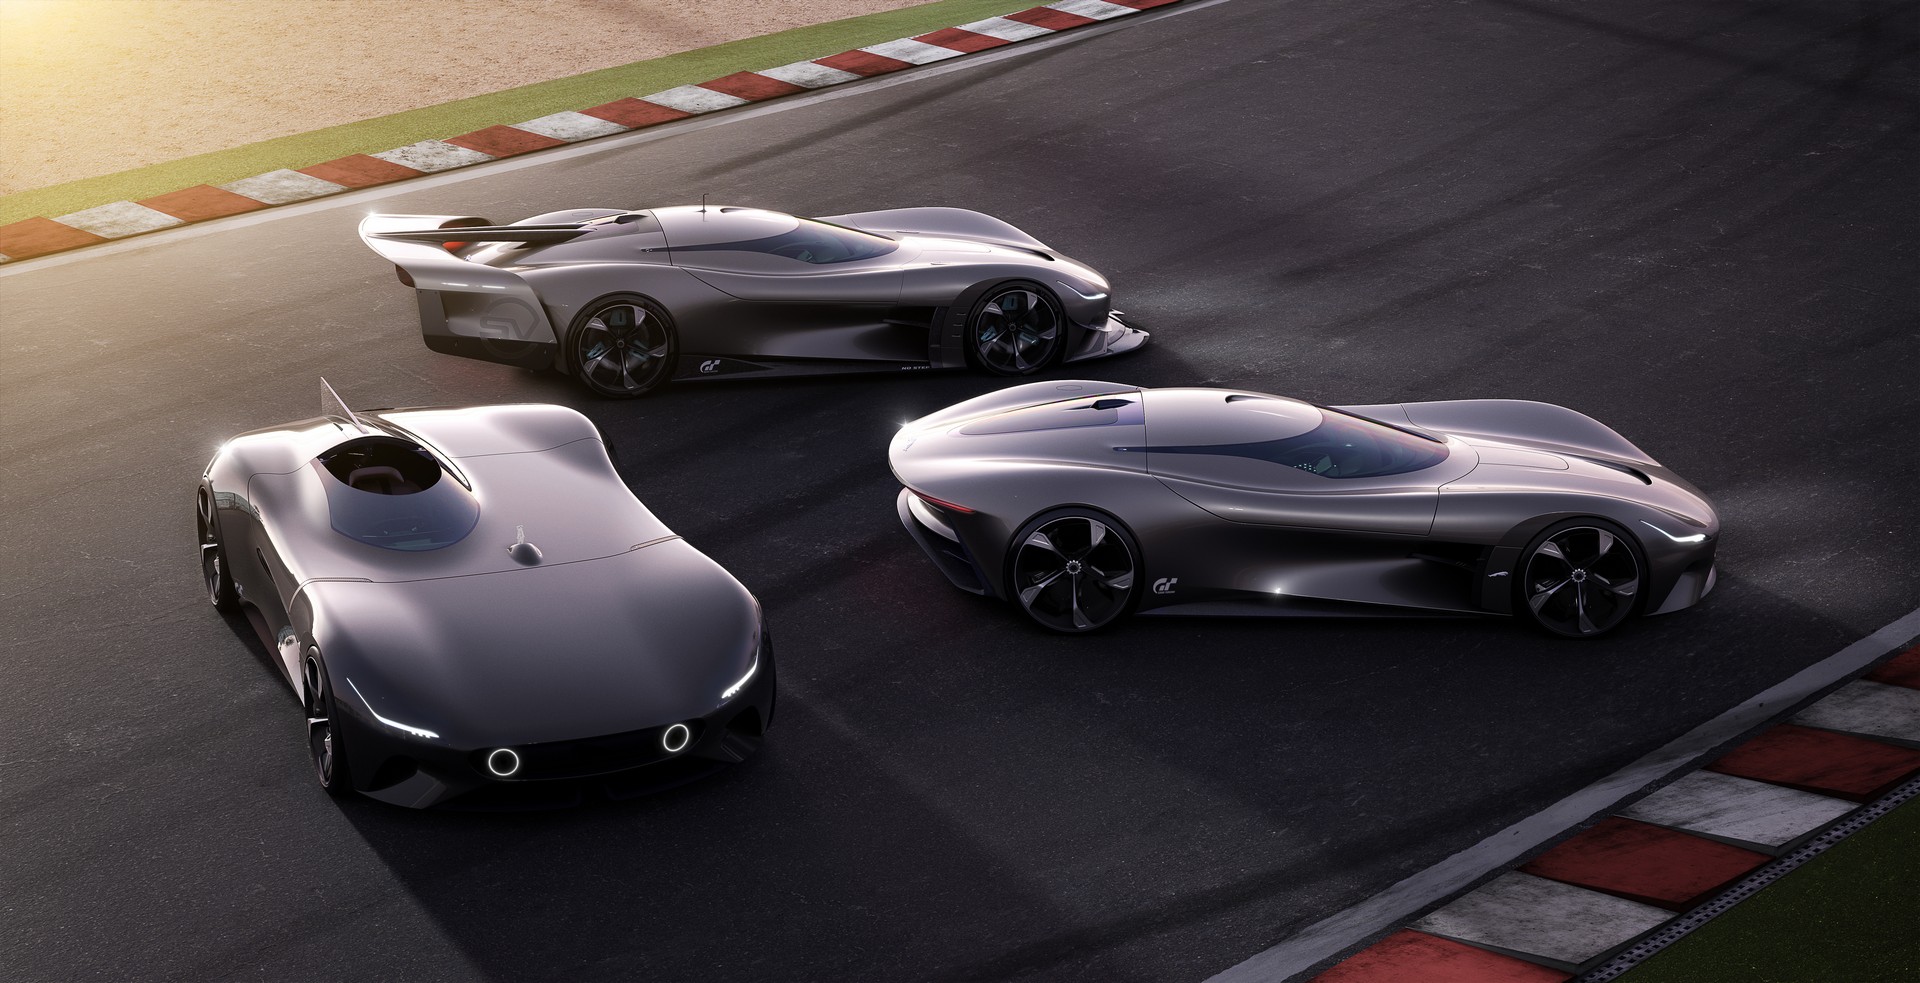 El Roadster se une a la familia de modelos coupé presentados por Jaguar en exclusiva para Gran Turismo